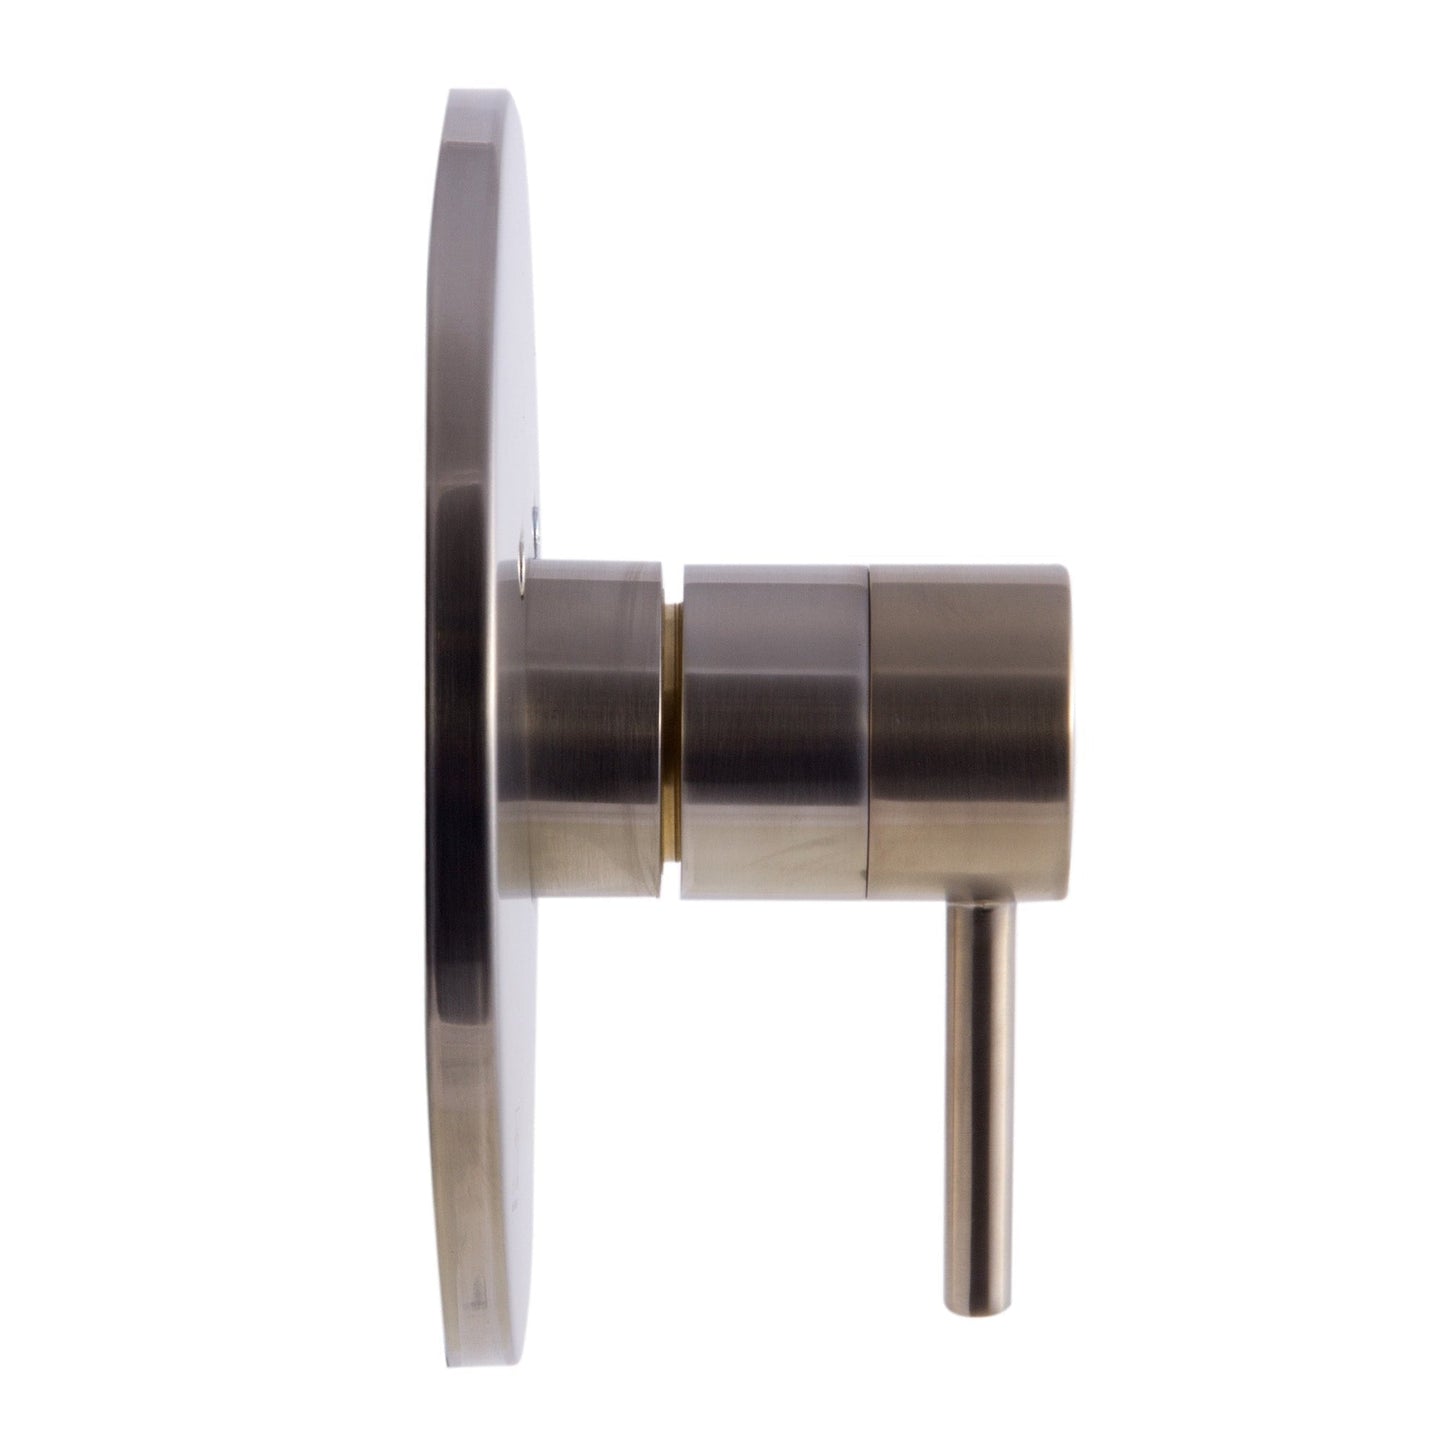 ALFI Brand AB1601-BN Round Brushed Nickel Pressure Balanced Shower Mixer